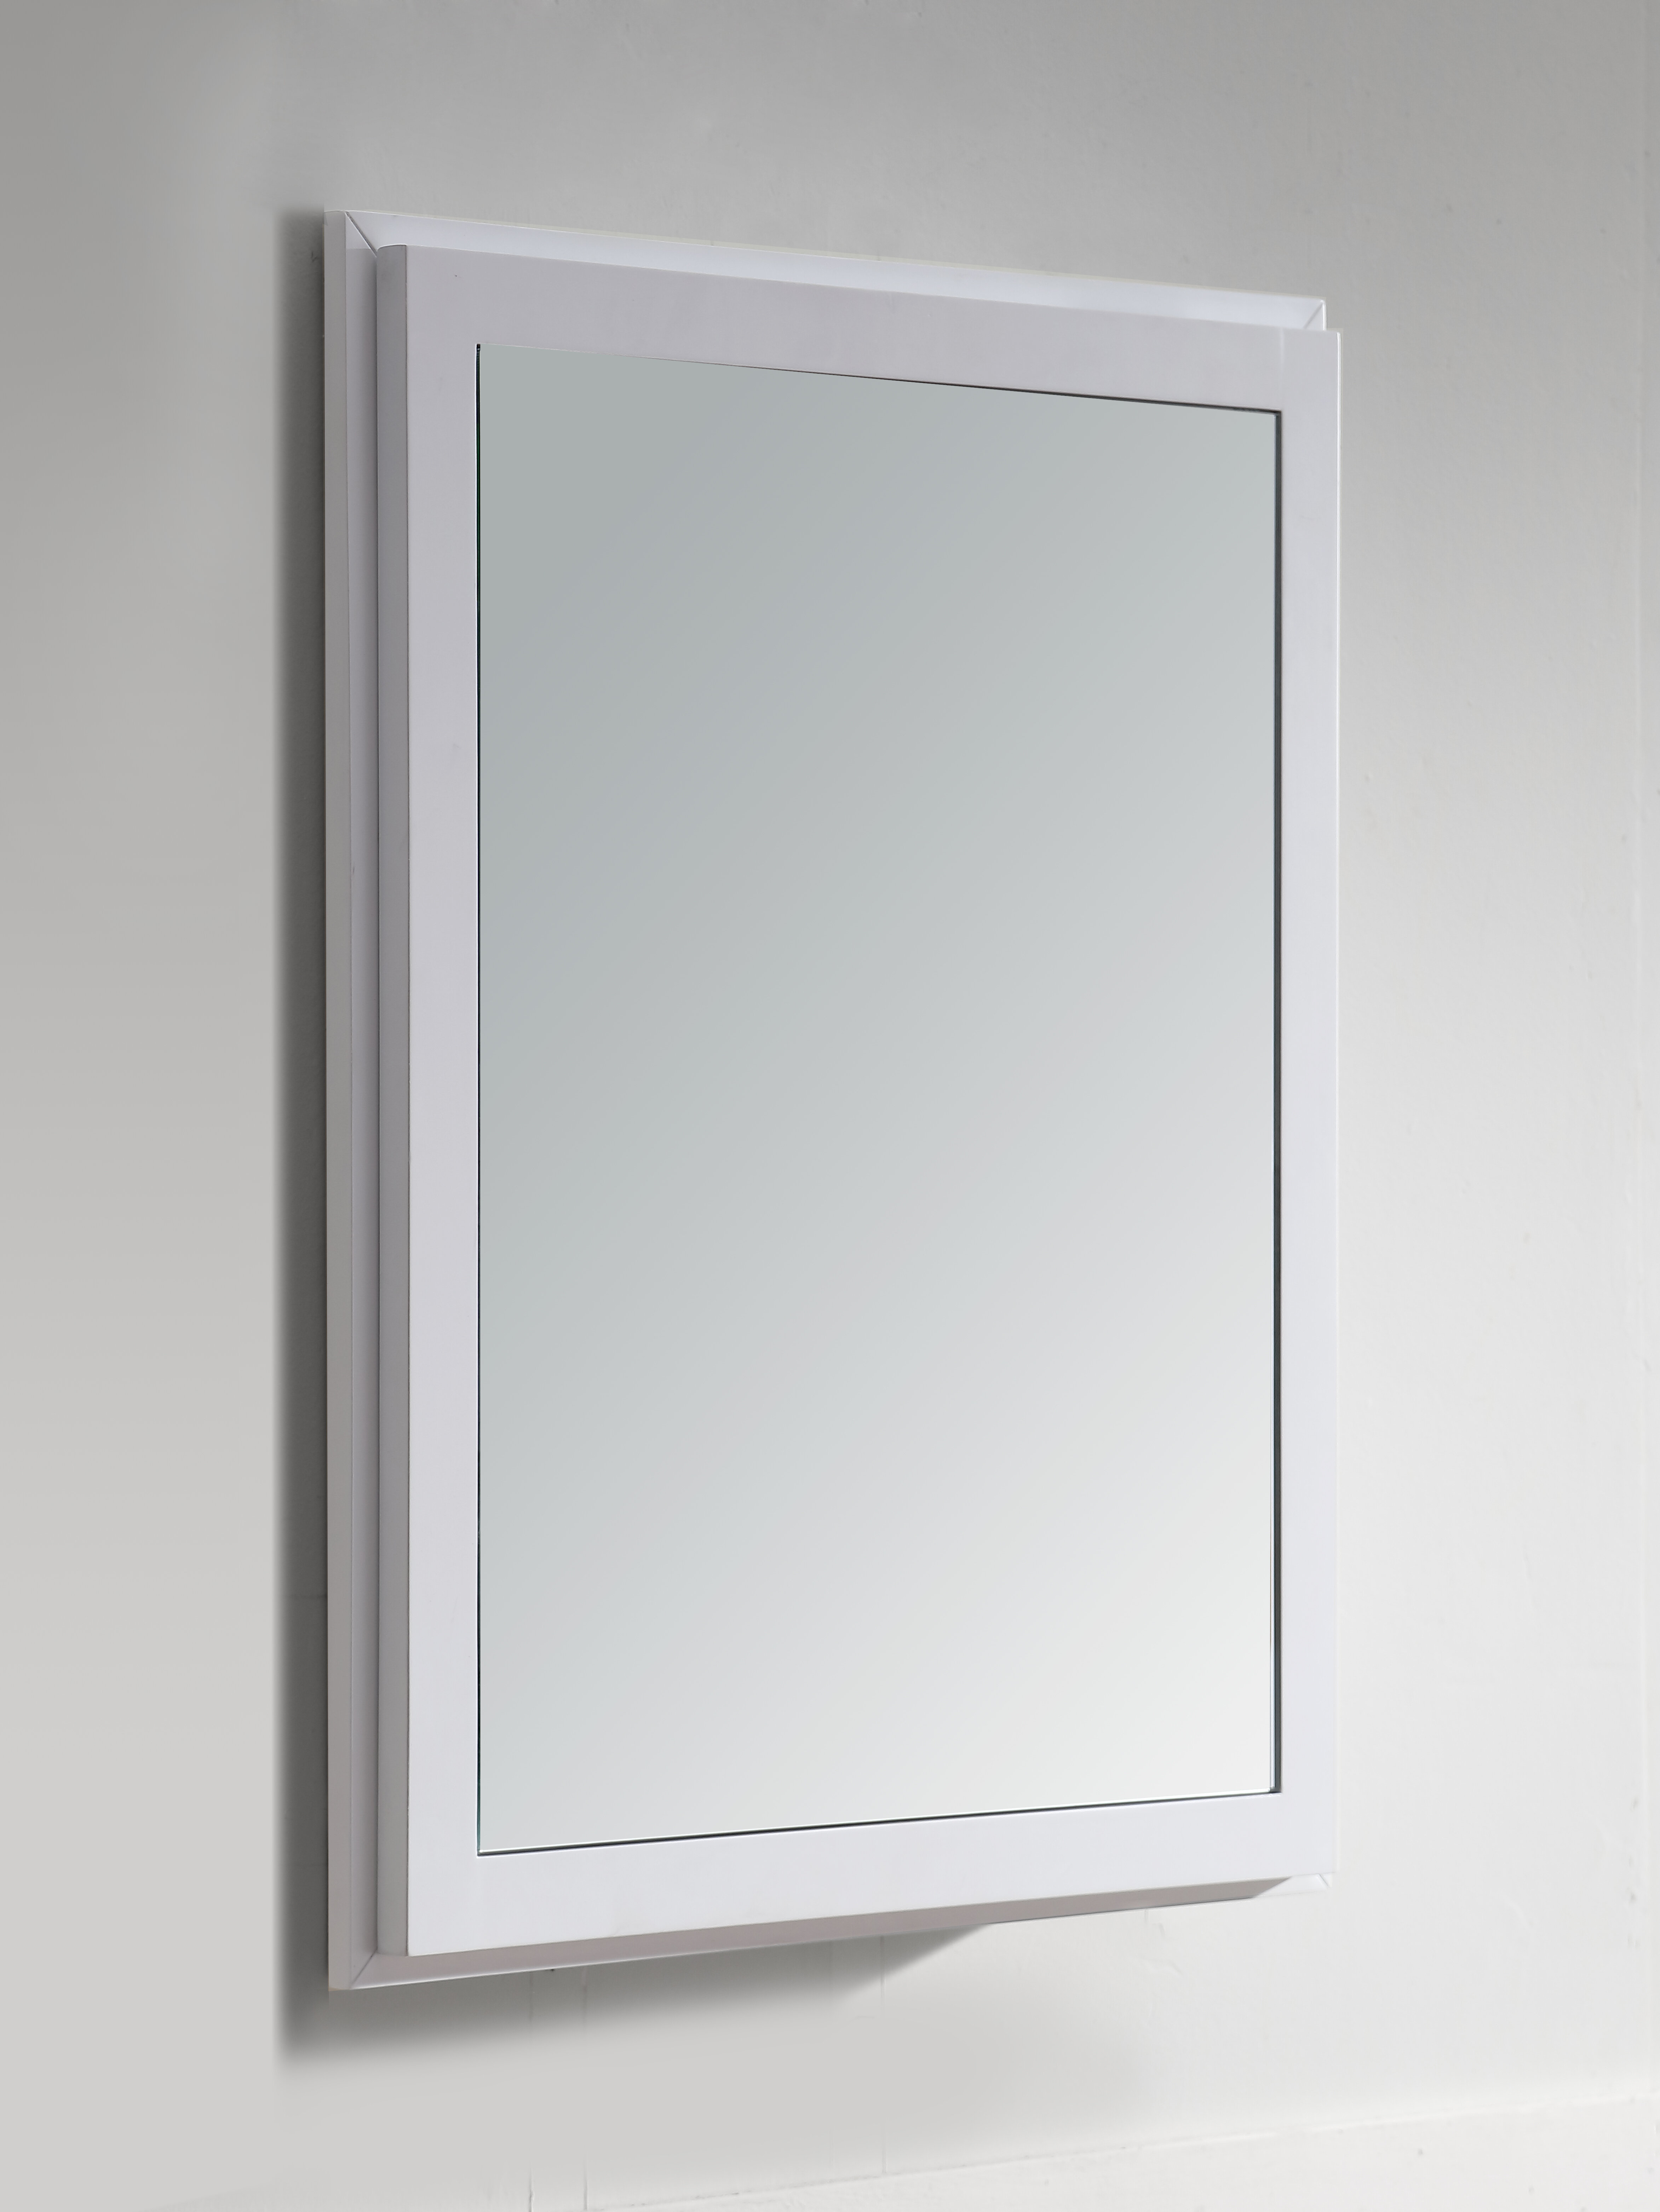 24x30 framed mirror